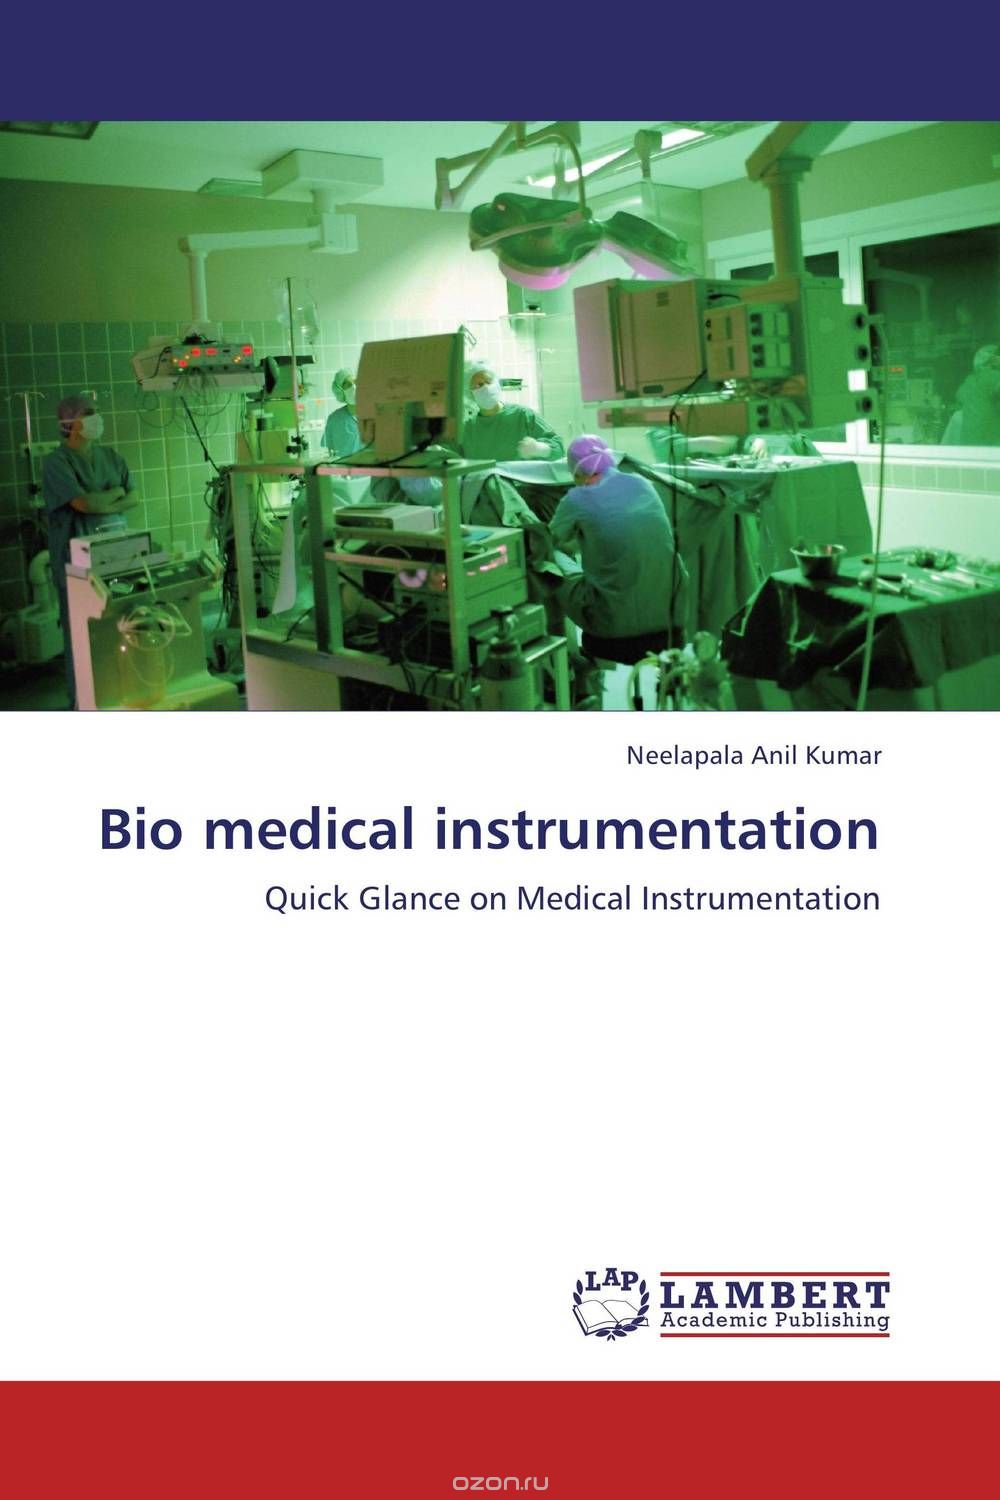 Скачать книгу "Bio medical instrumentation"